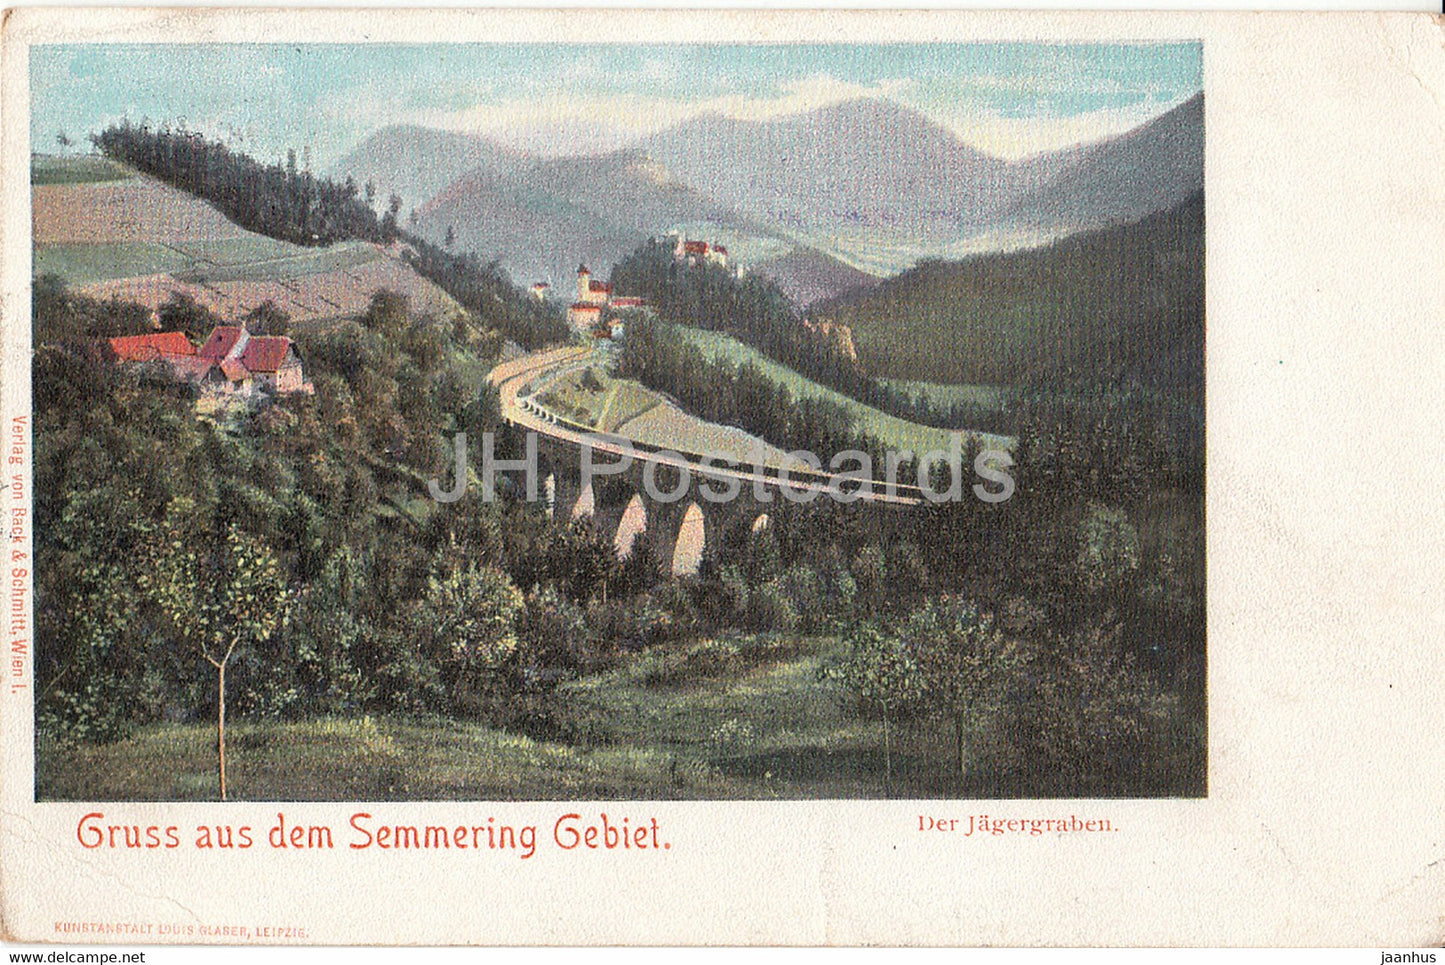 Gruss aus dem Semmering Gebiet - Der Jagergraben - Drucksache - old postcard - 1901 - Austria - used - JH Postcards